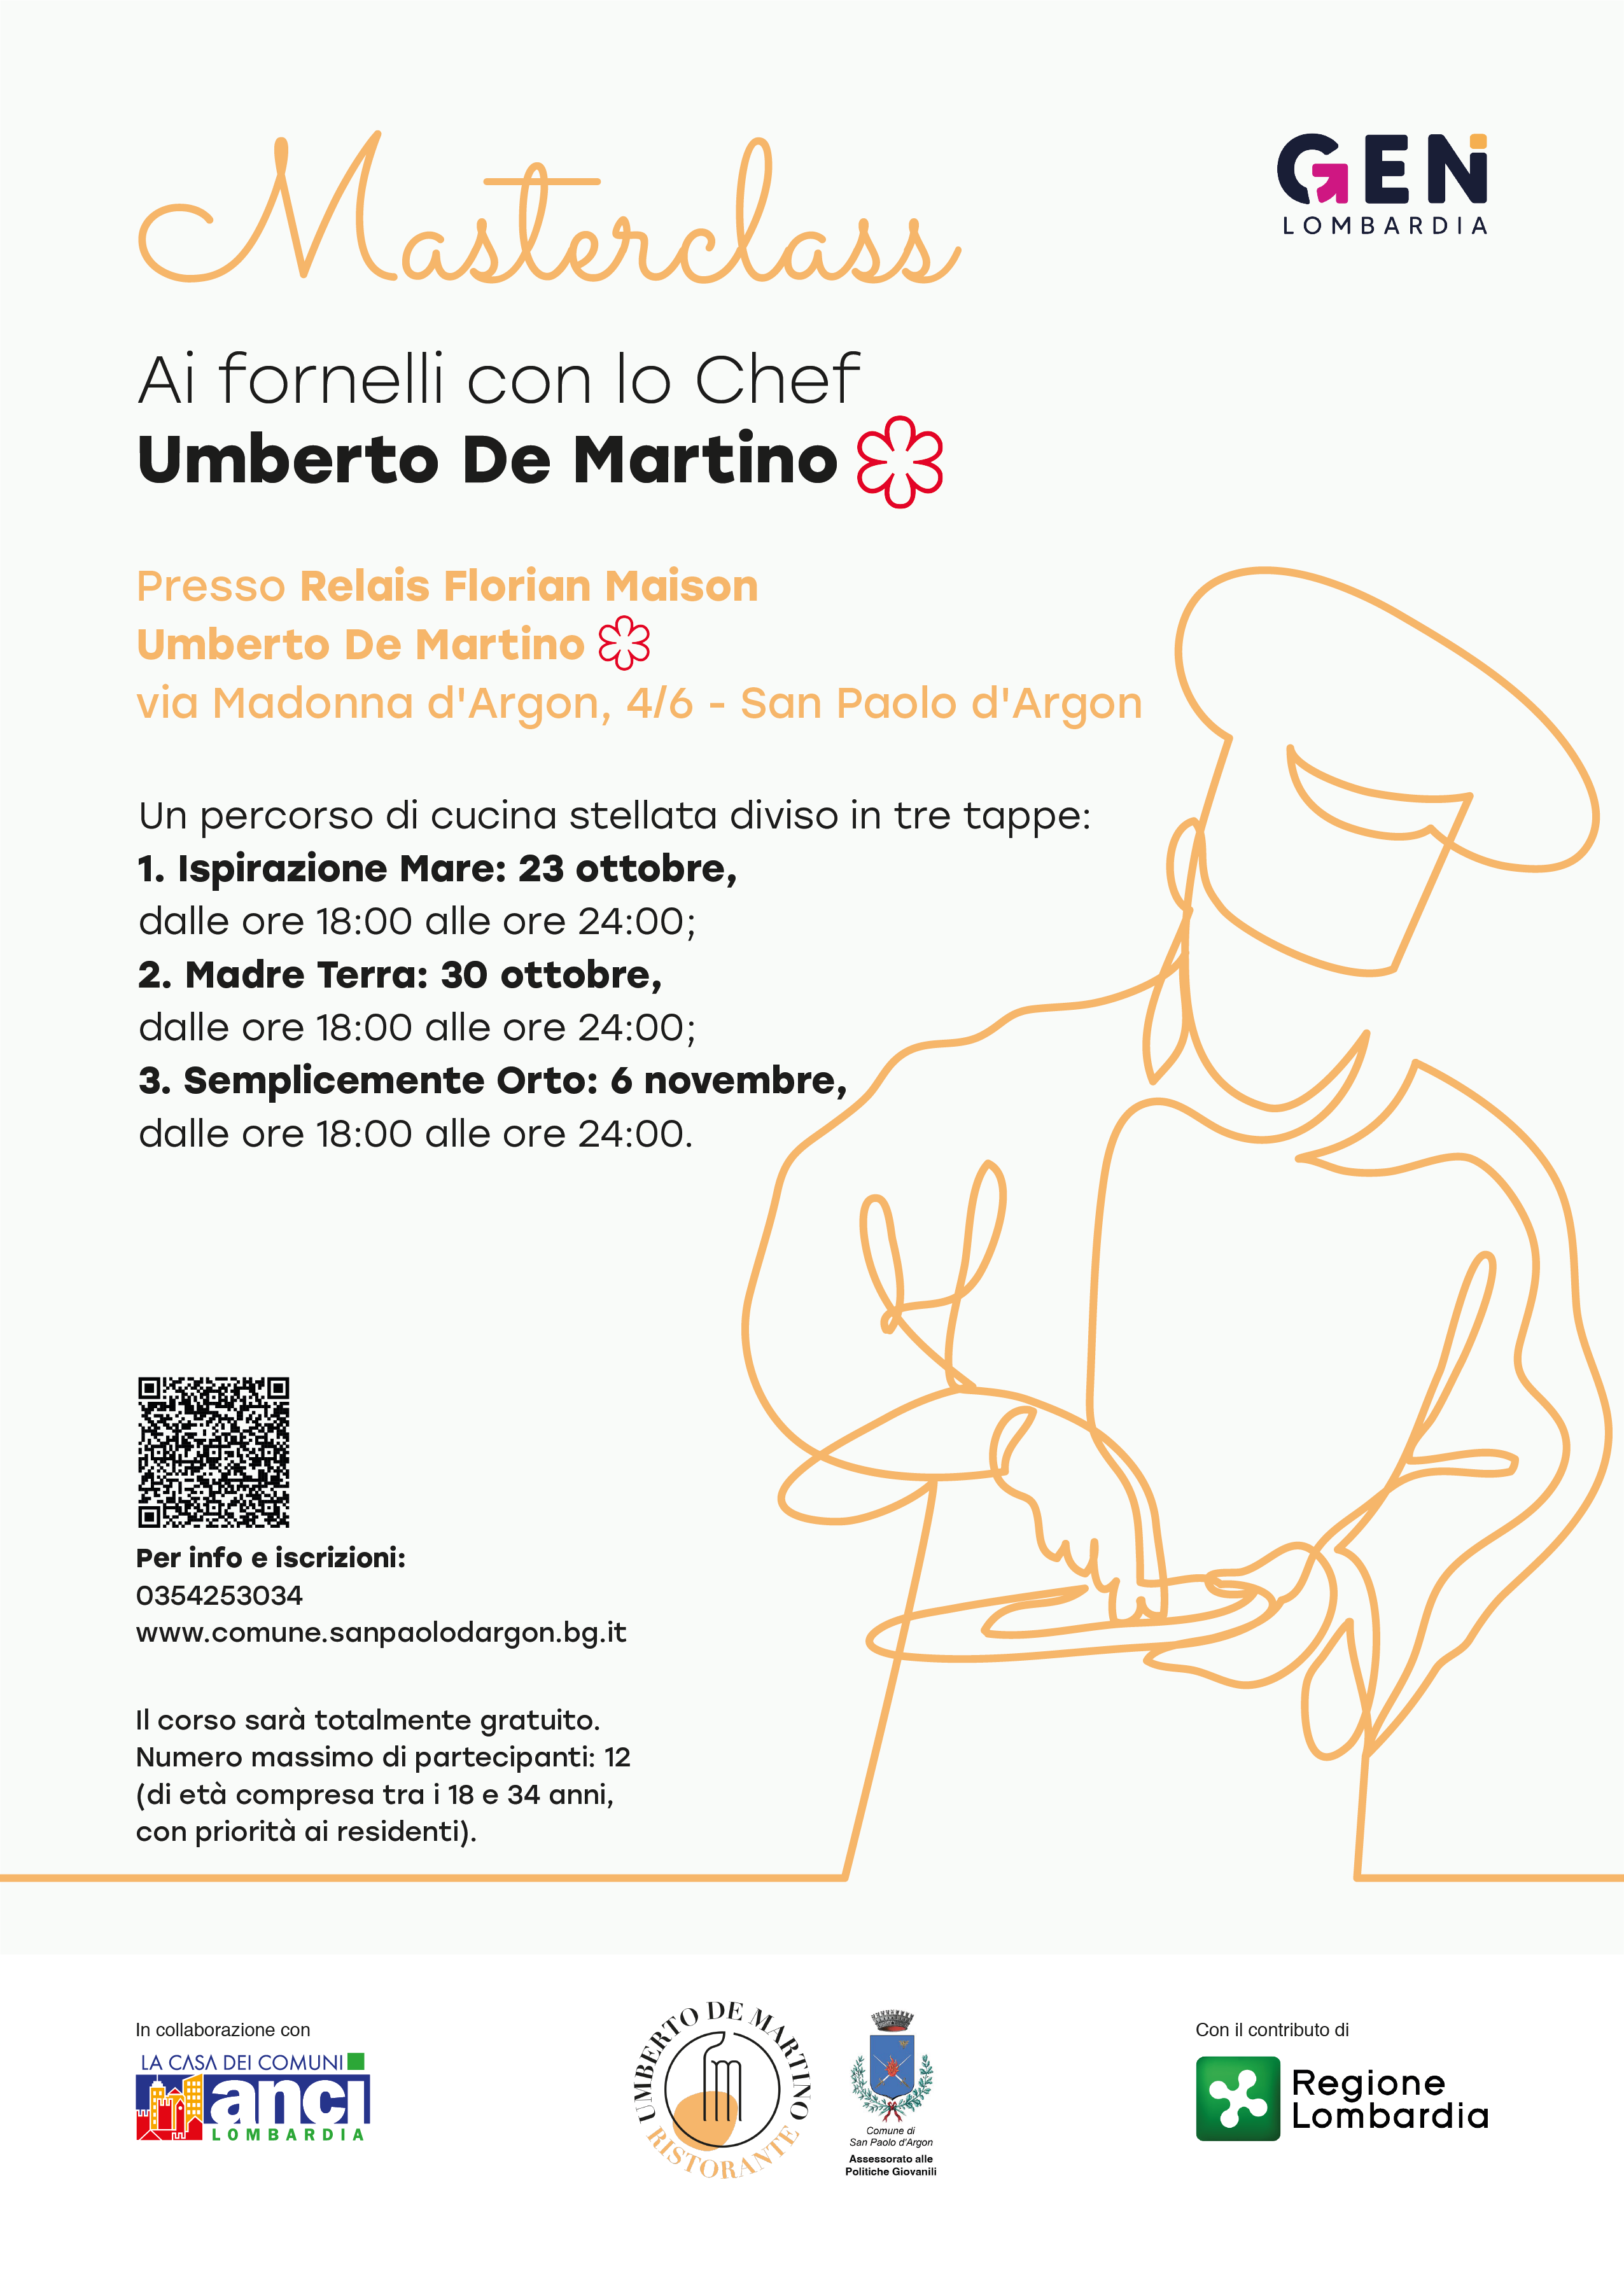 Corso di cucina teorico e pratico con lo Chef Stellato Umberto De Martino. Iscrizioni entro il giorno 13 ottobre alle ore 12.00